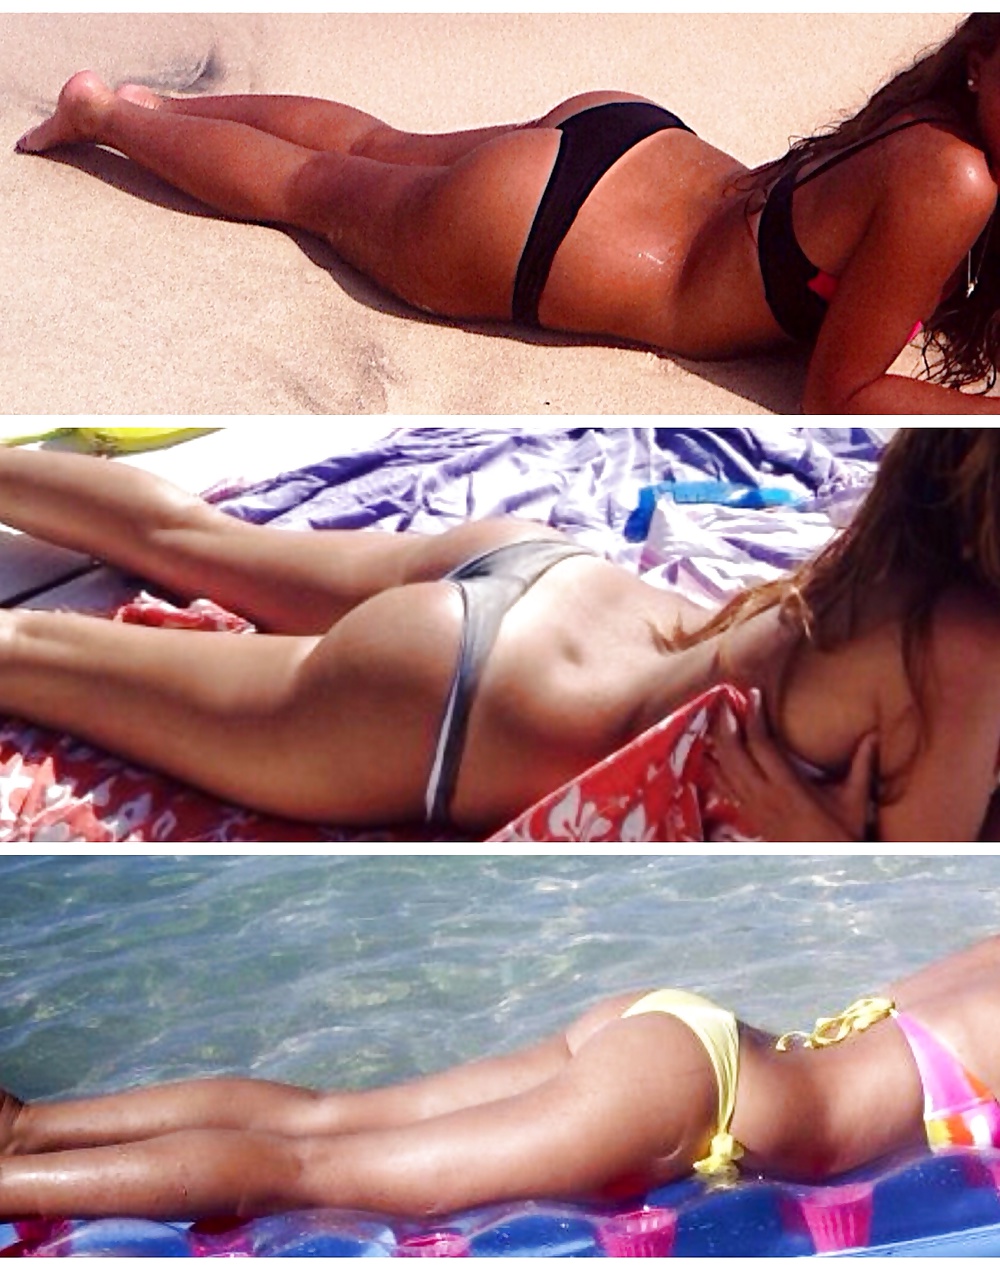 Italian ass teen bikini beach #24016638